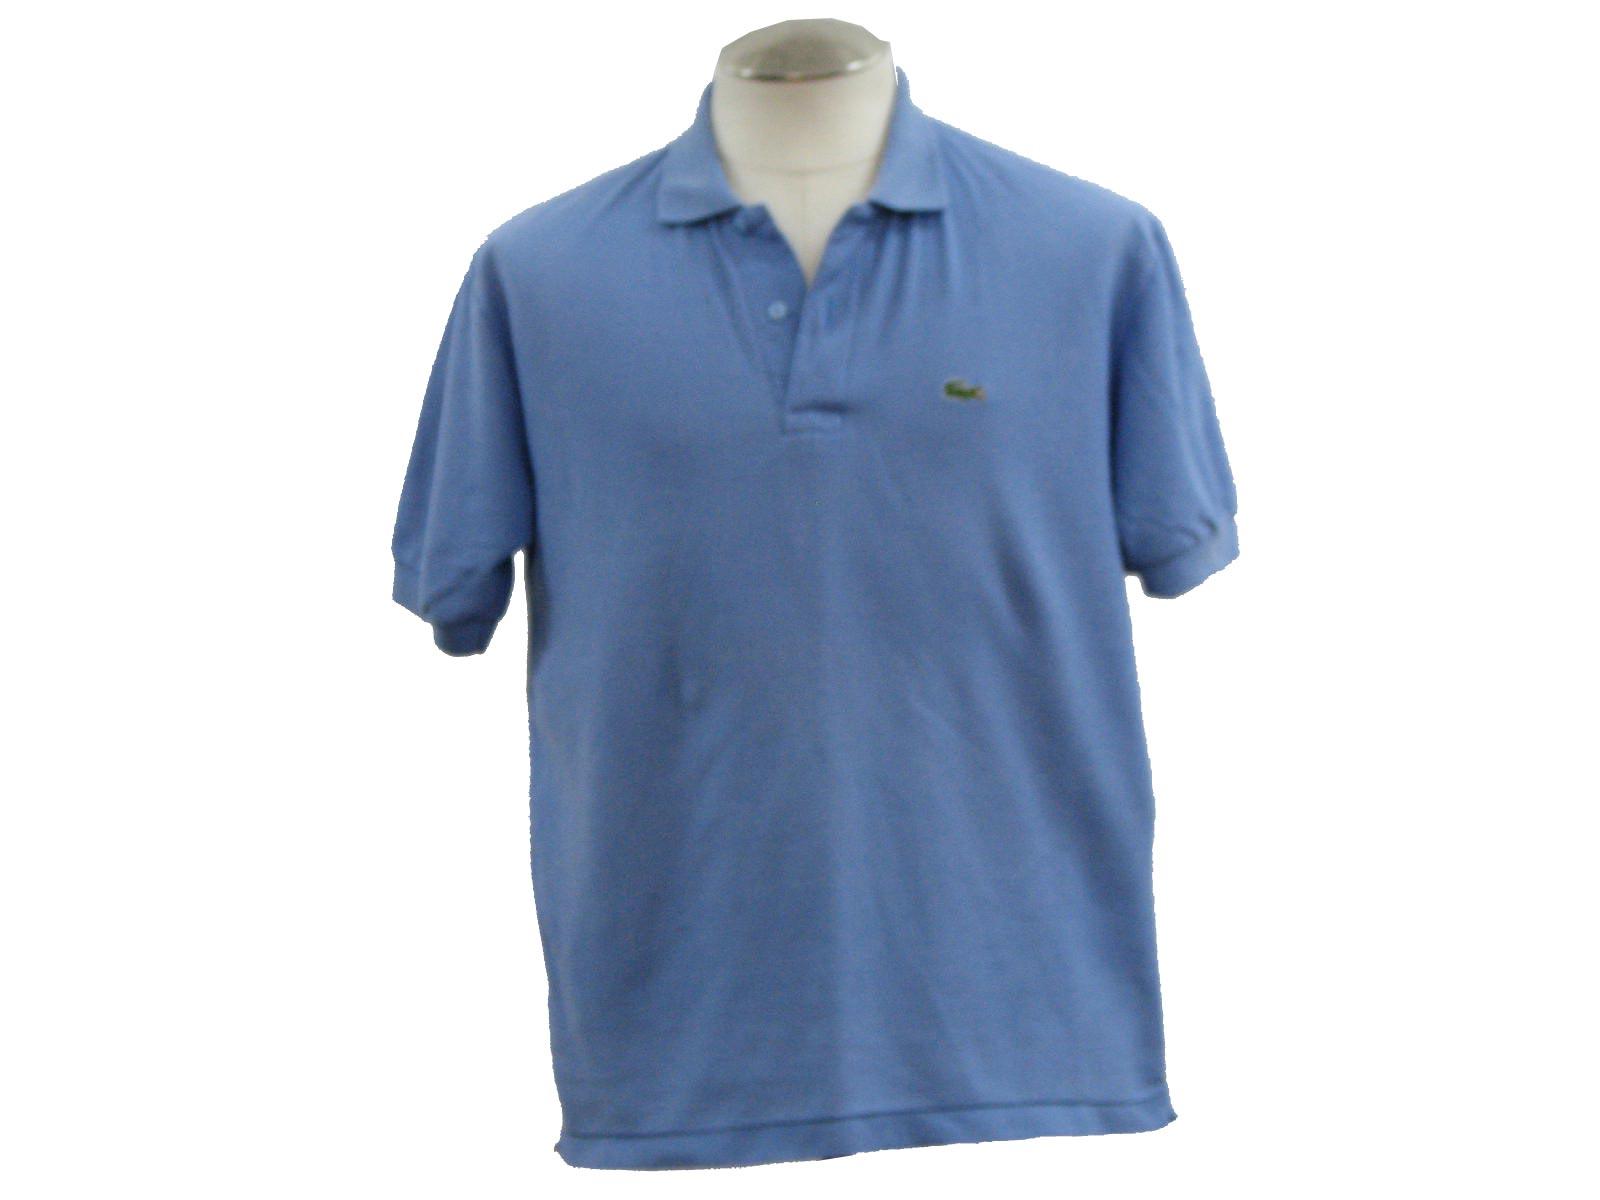 Izod Apparel Logo - 80's Vintage Shirt: 80s -Izod Lacoste- Mens periwinkle woven cotton ...